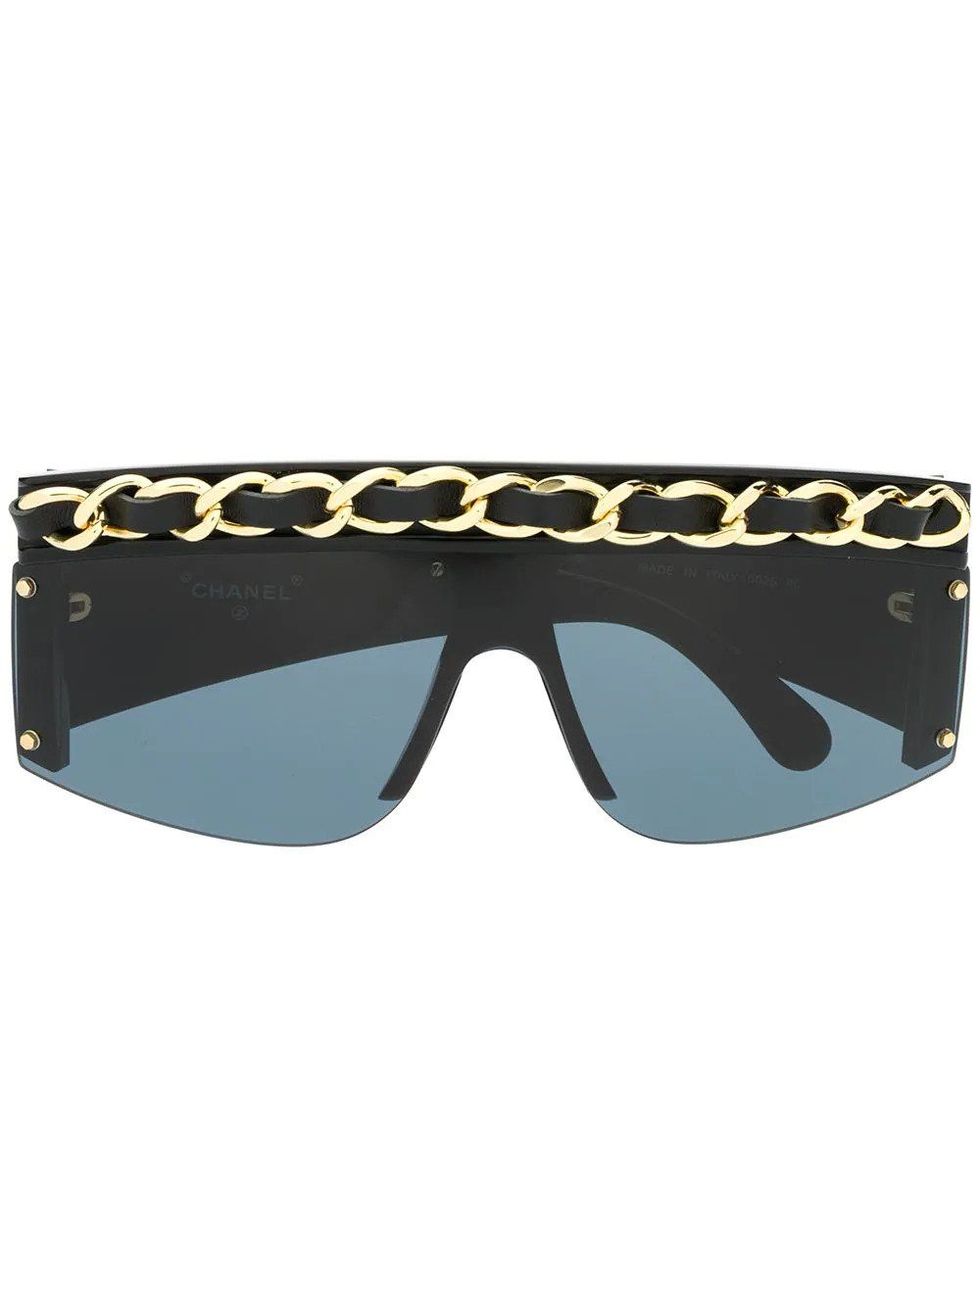 oprejst Huddle Sikker The best vintage Chanel sunglasses to buy